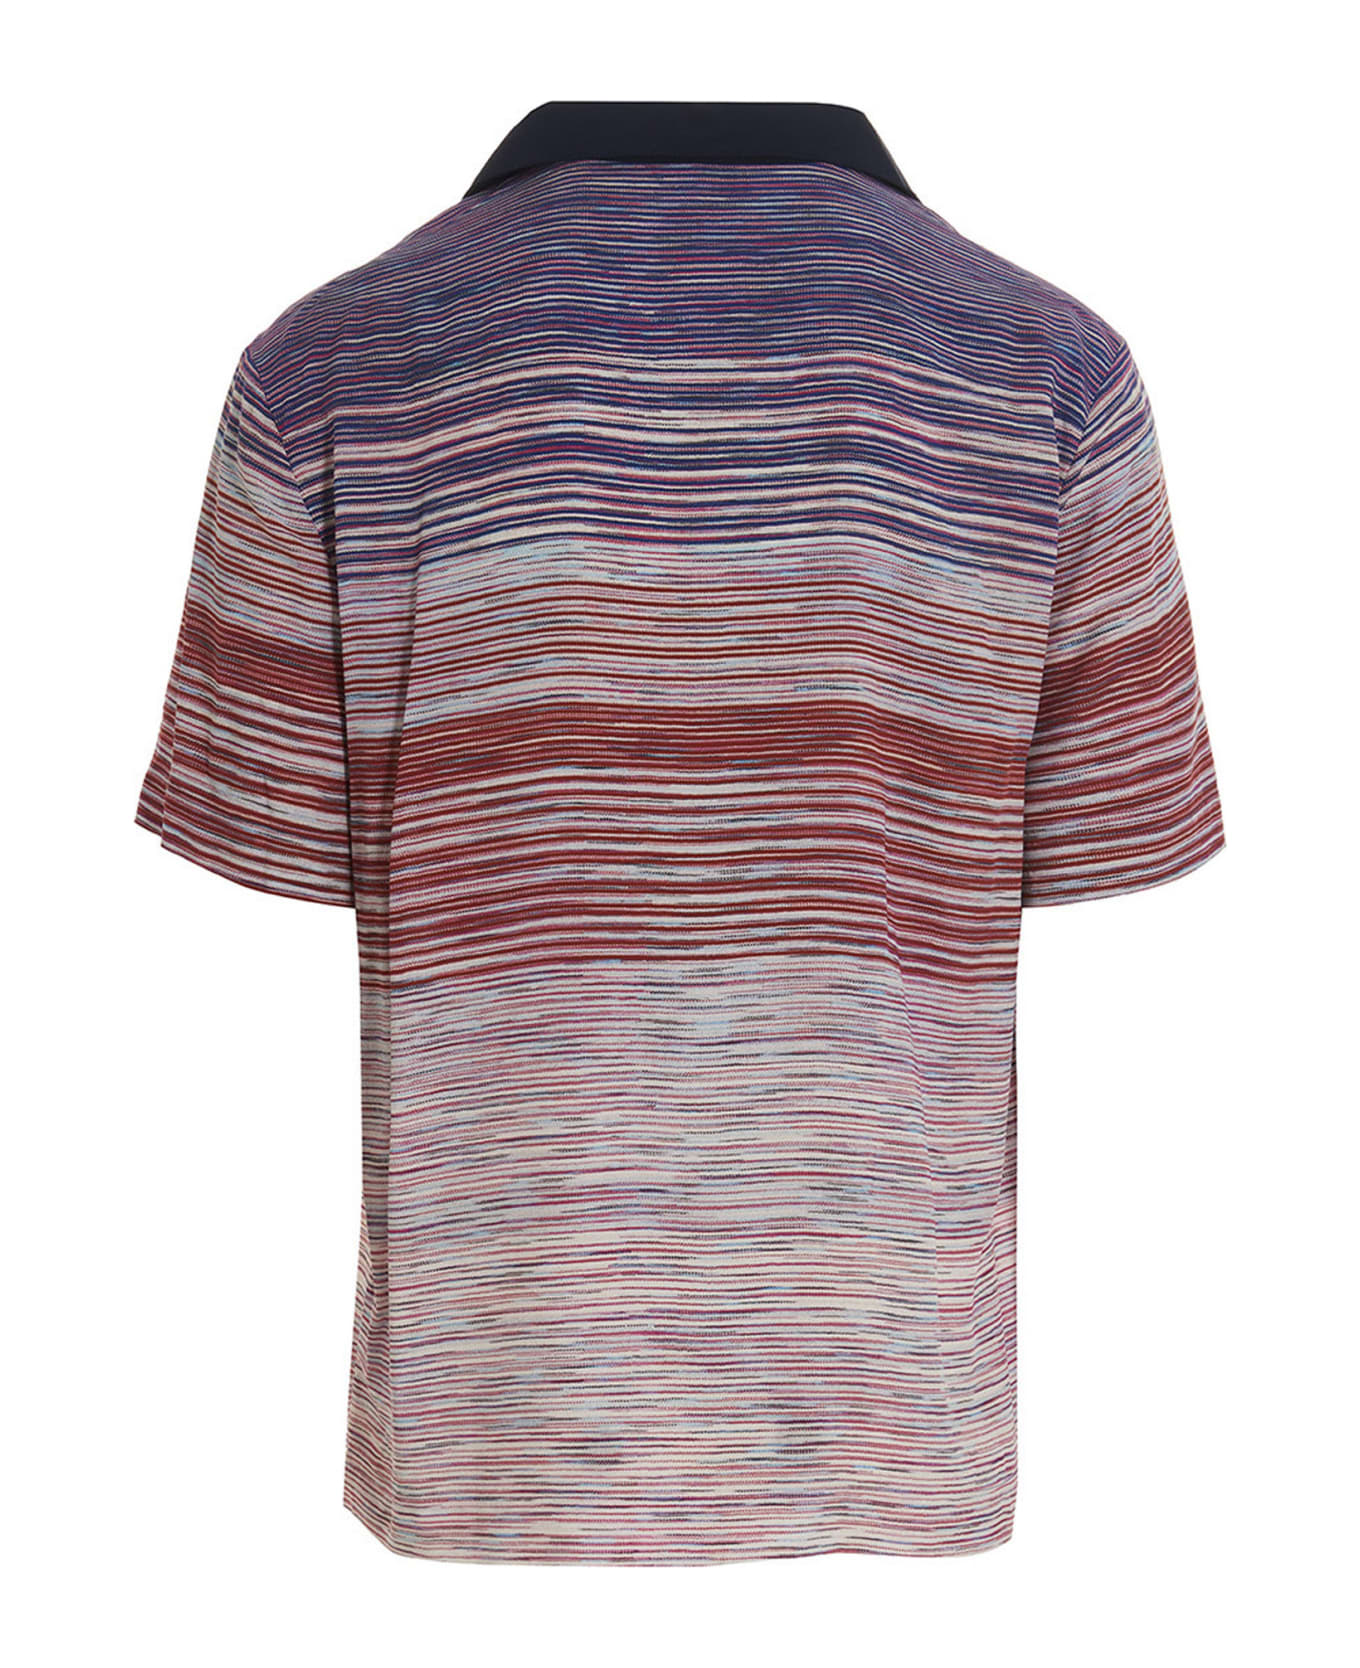 Missoni Striped Shirt - Multicolor